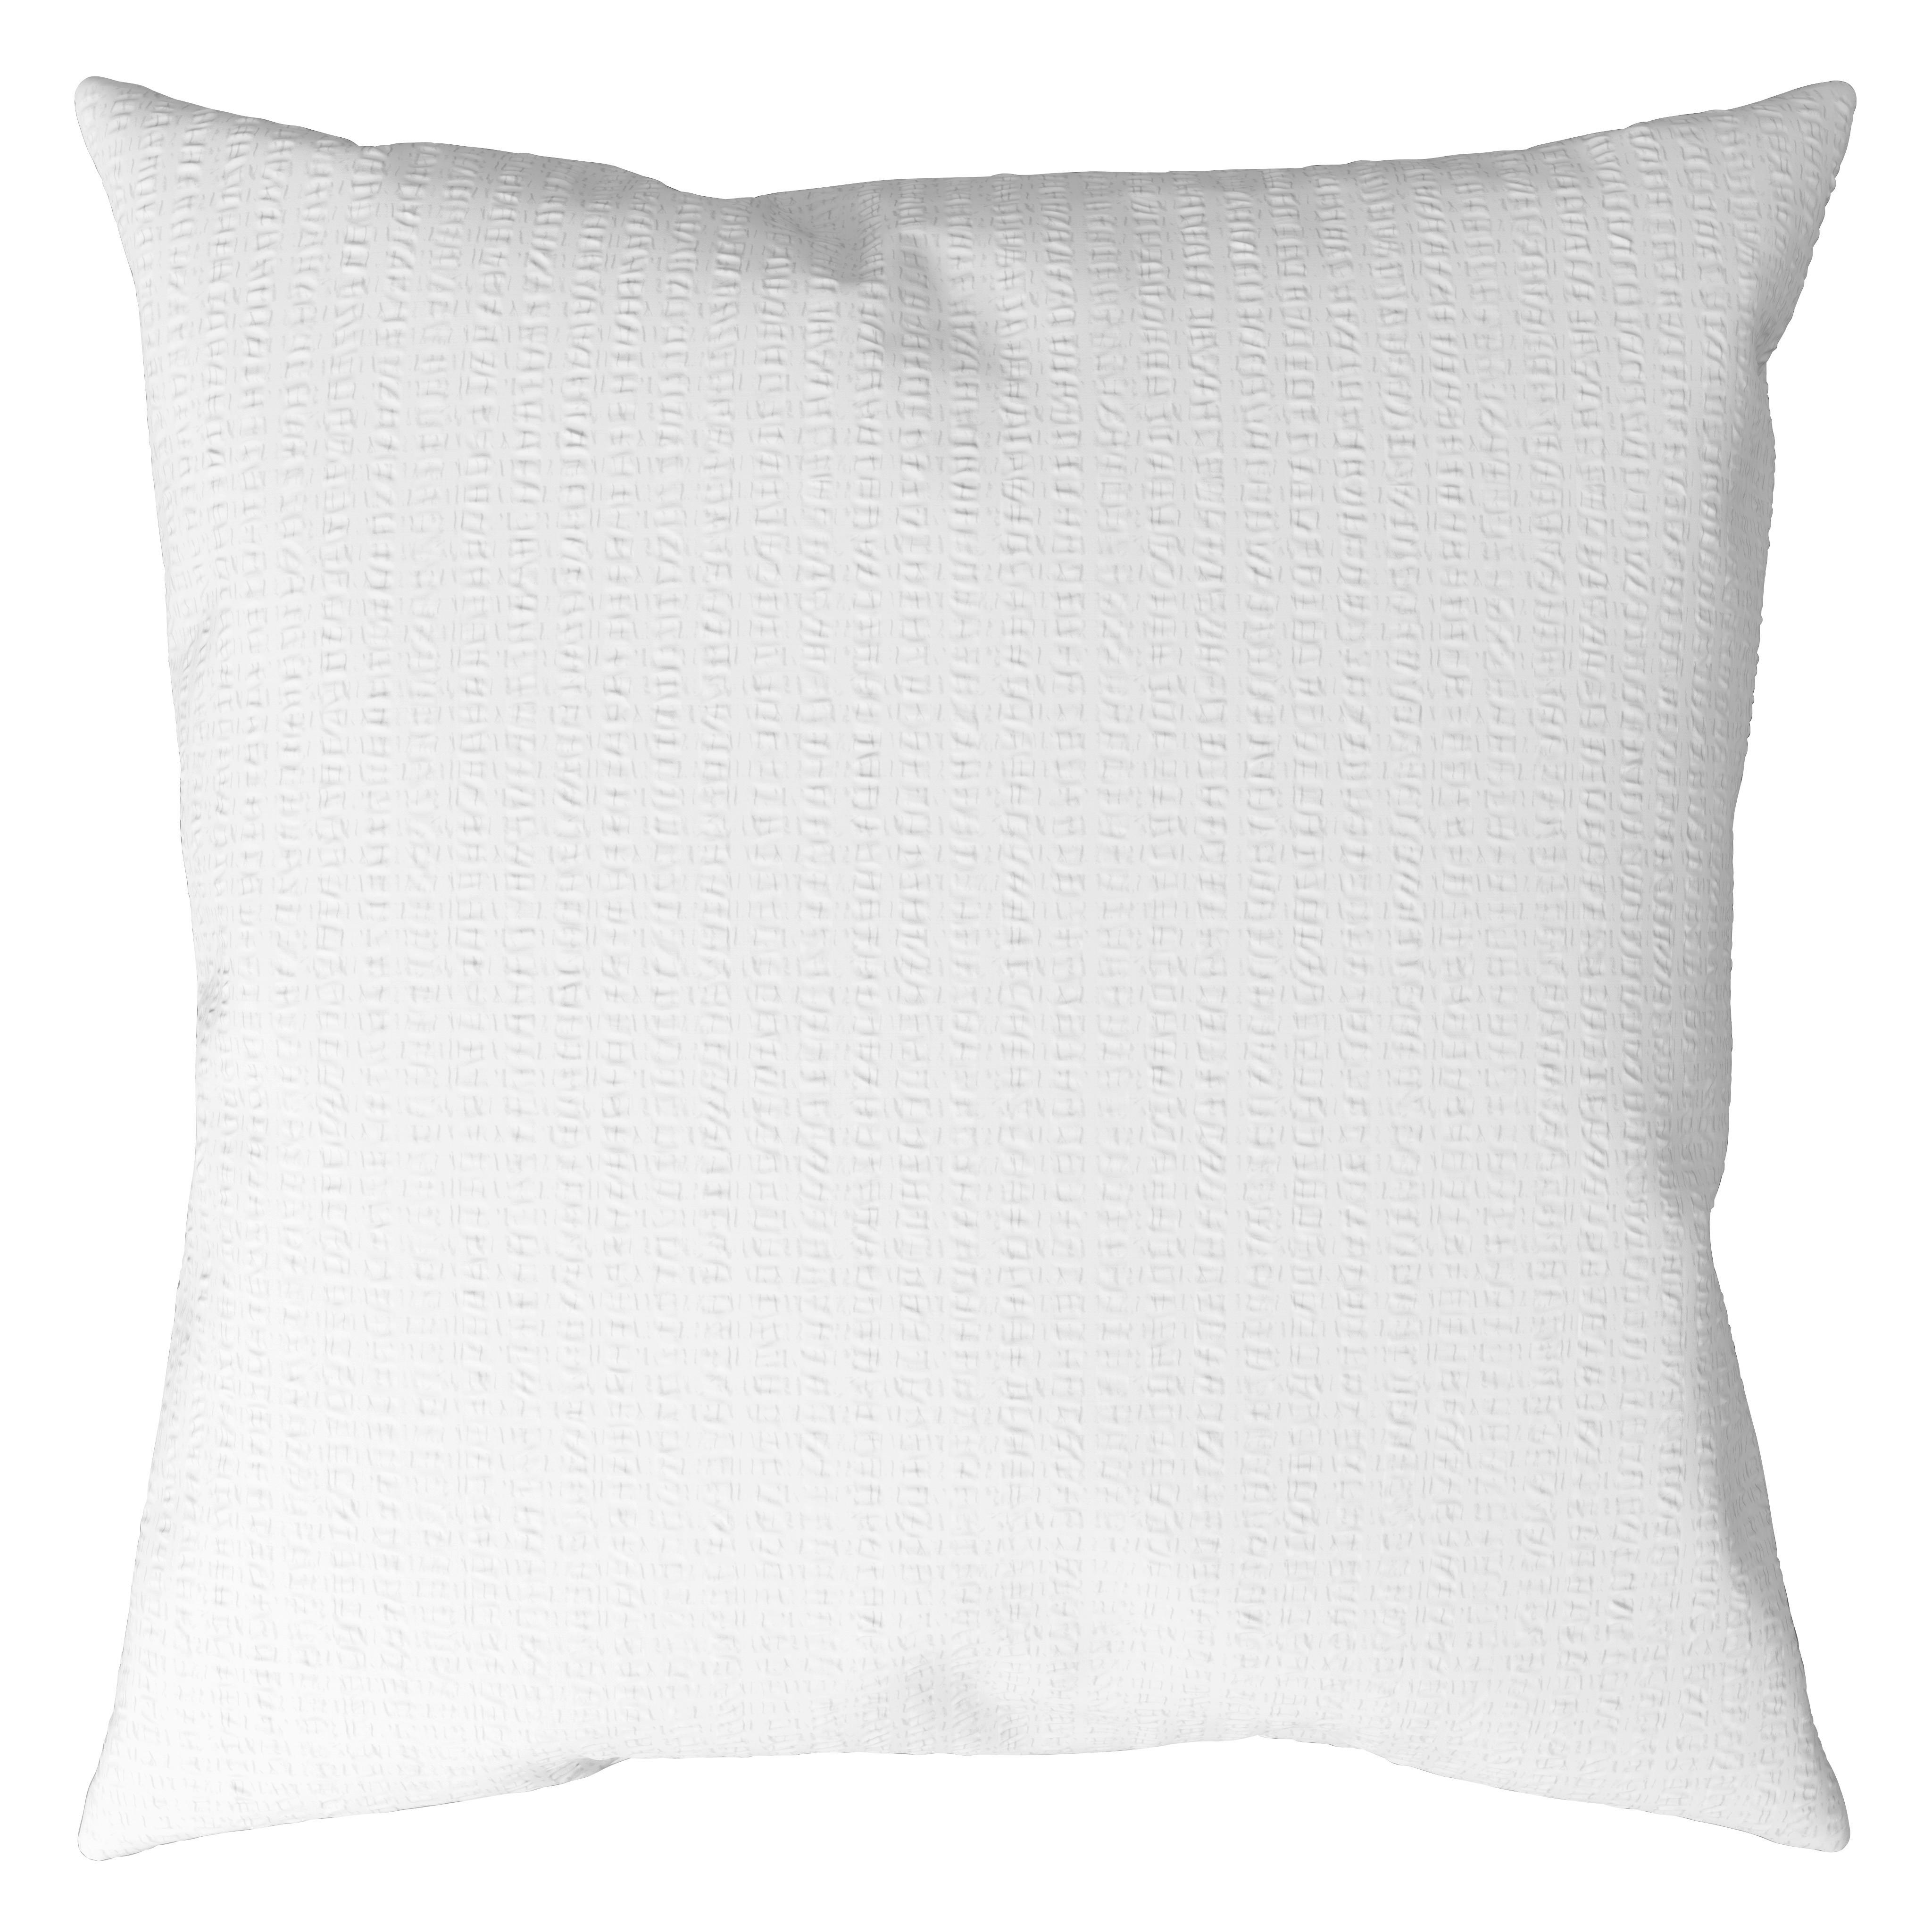 Bettwäsche Gisi in Weiß ca. 135x200cm - Weiß, KONVENTIONELL, Textil (135/200cm) - Modern Living